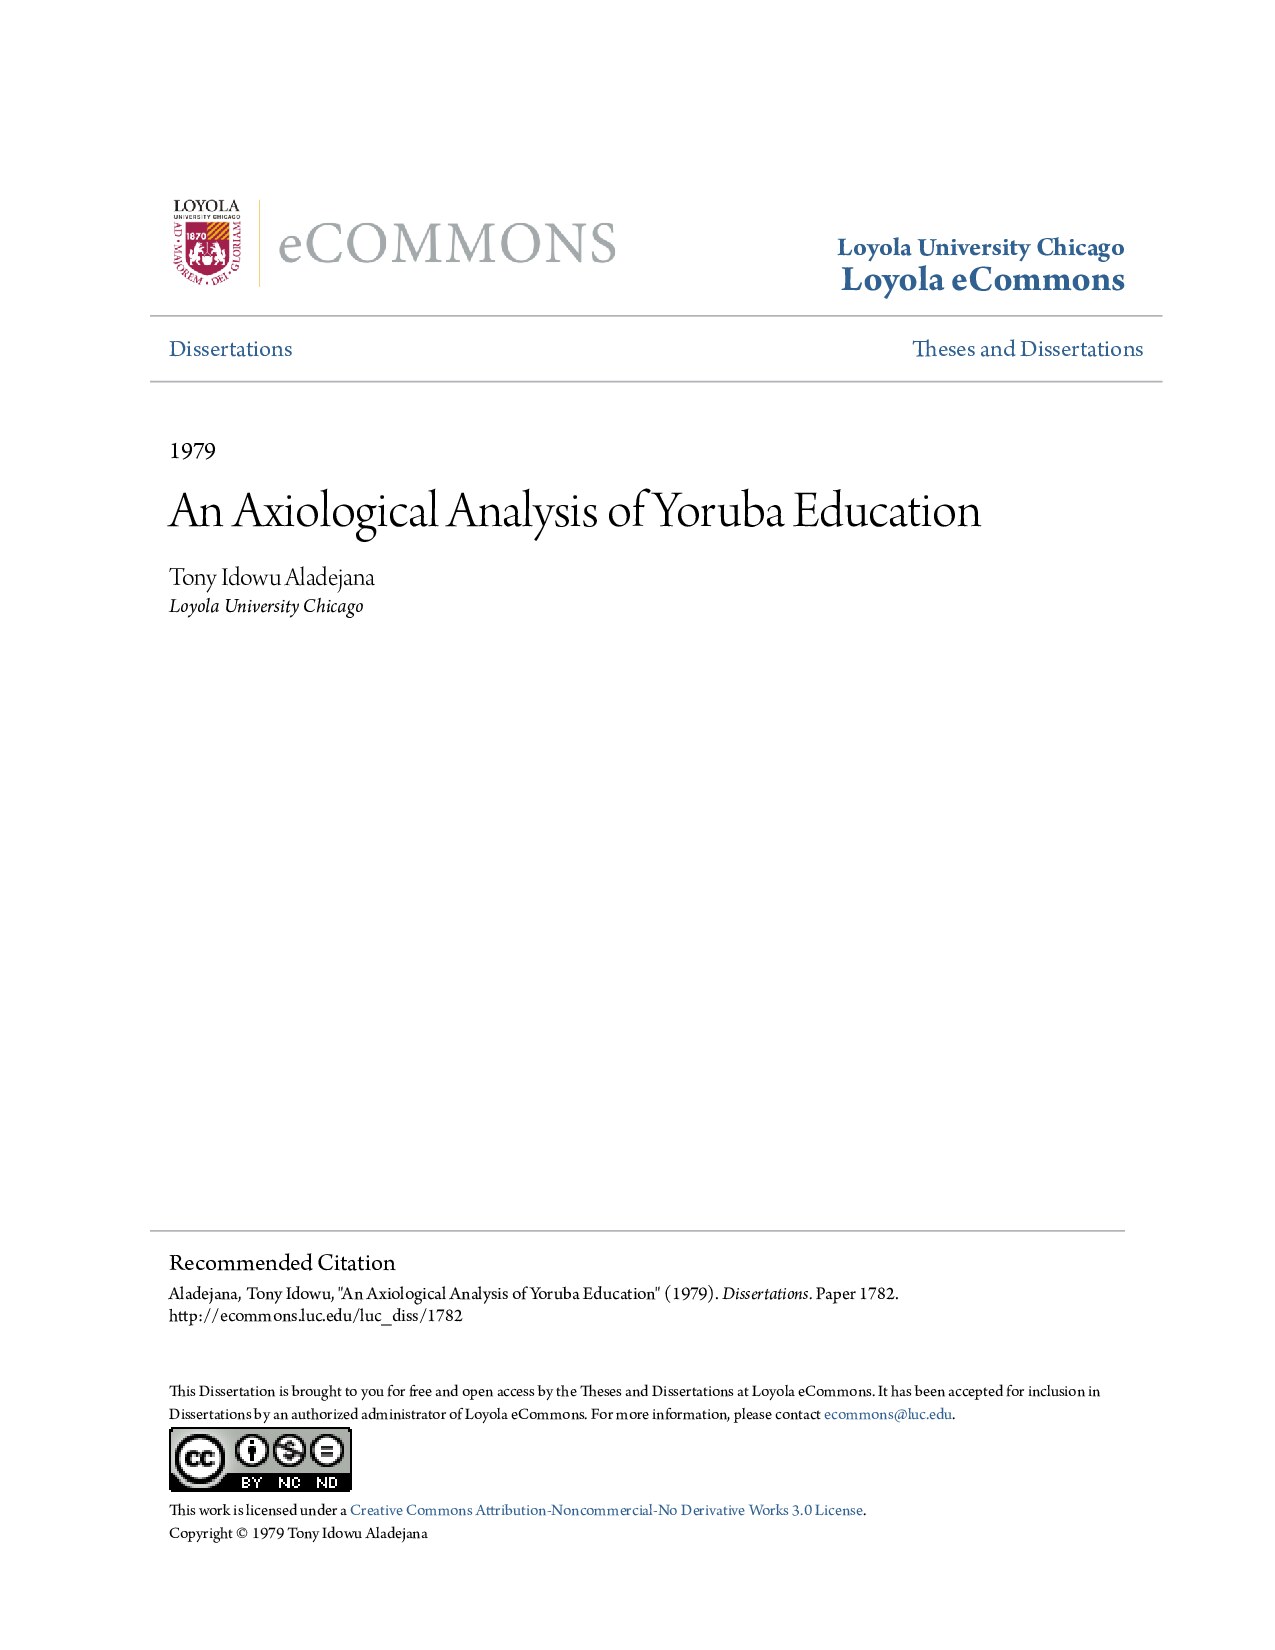 An Axiological Analysis of Yoruba Education